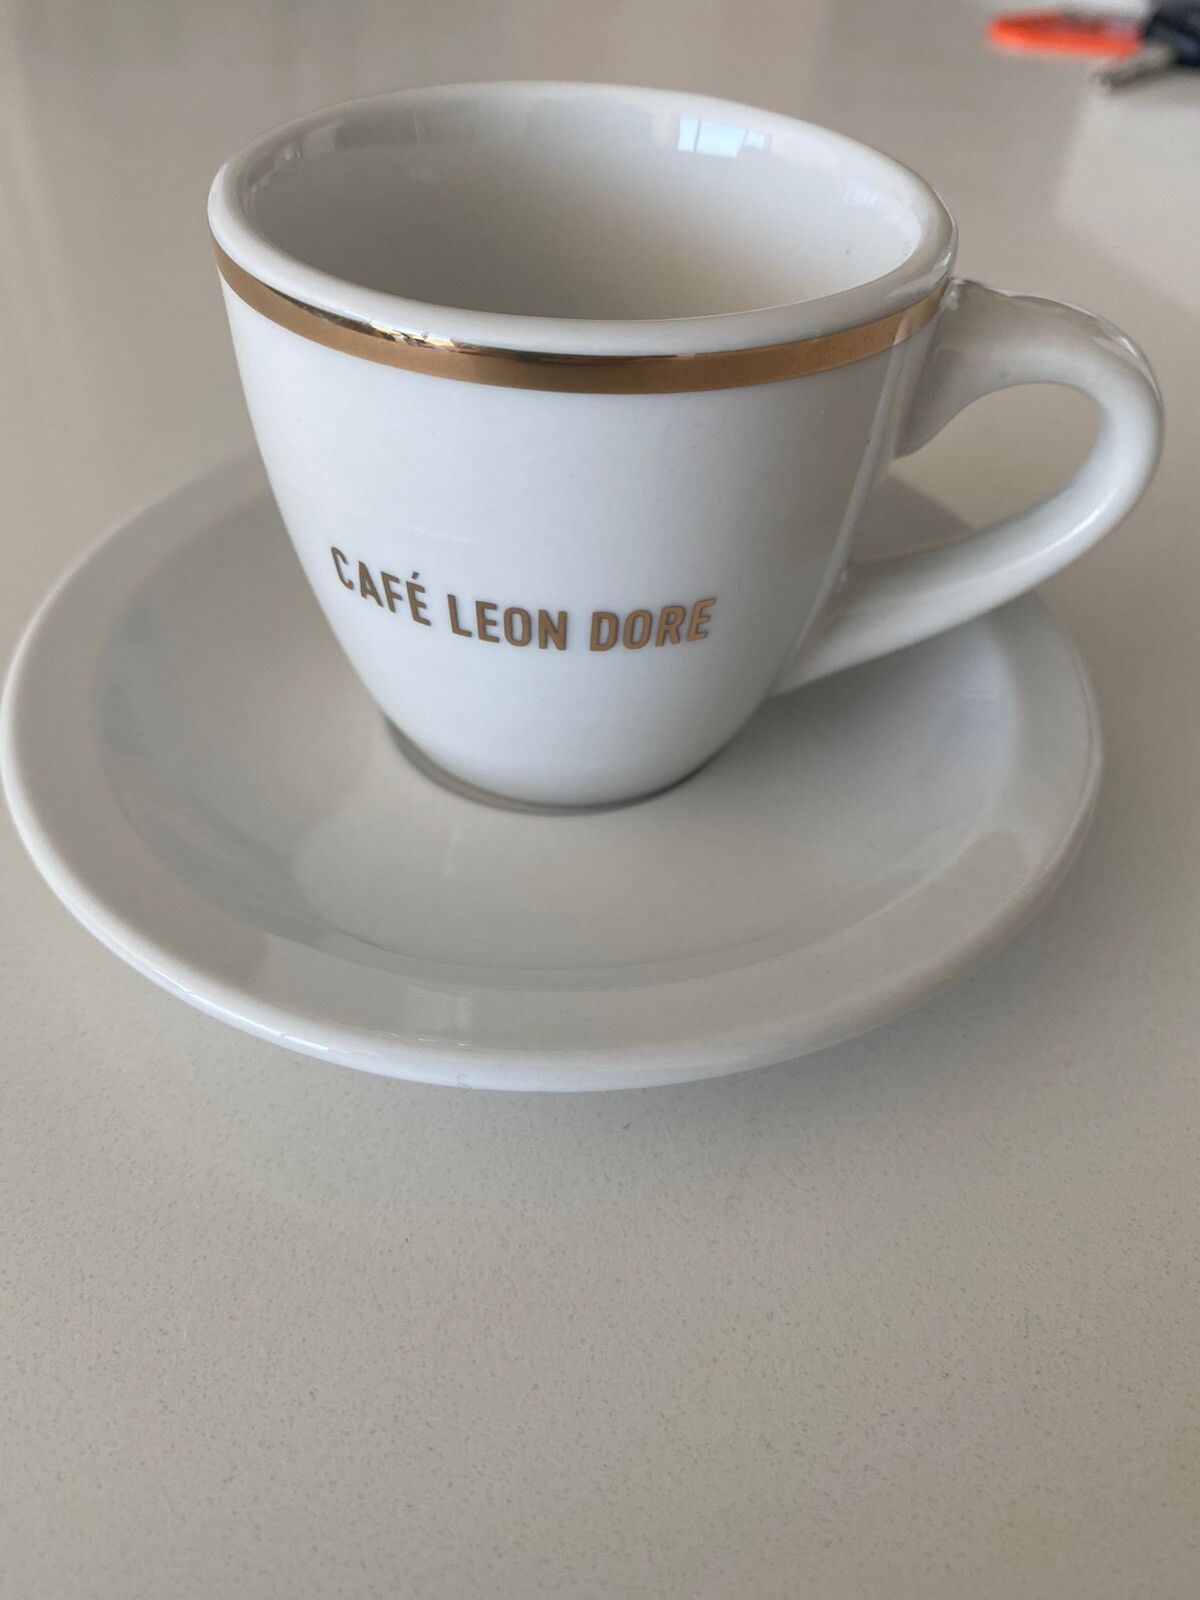 Aime Leon Dore Café Leon Dore Espresso Cup White mug White